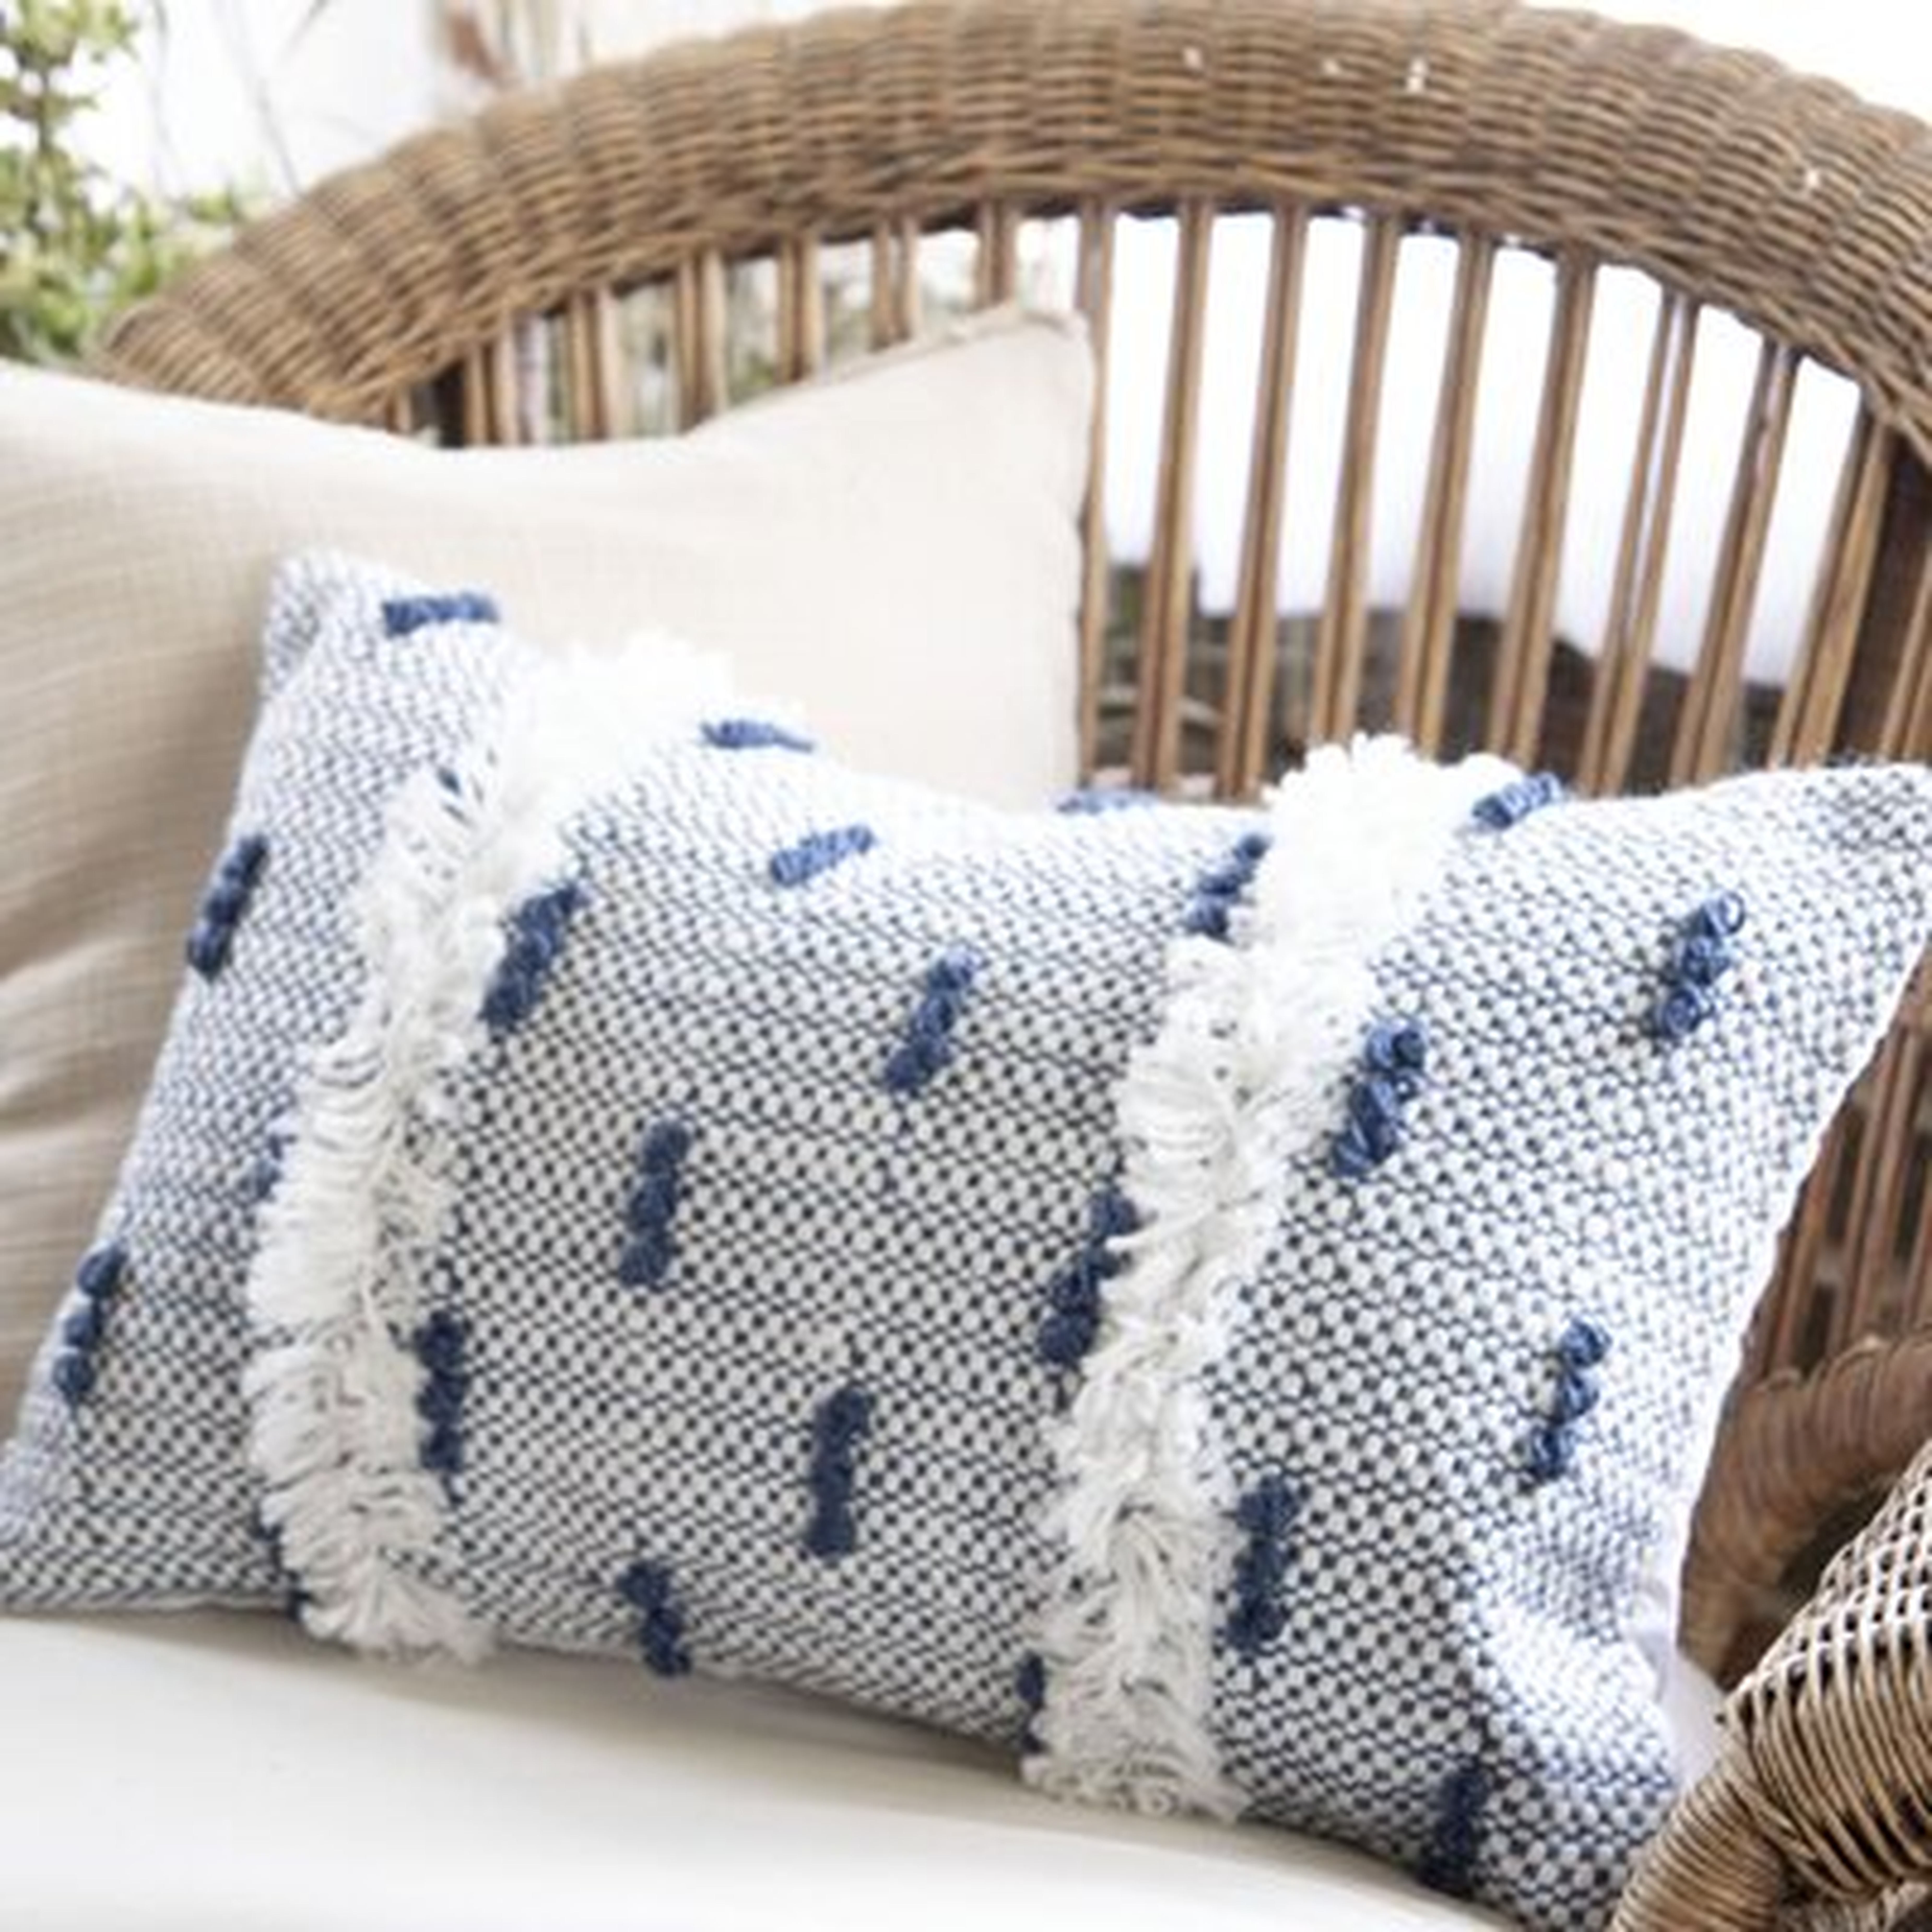 Hand Woven Decorative Outdoor Rectangular Pillow Cover & Insert - Wayfair